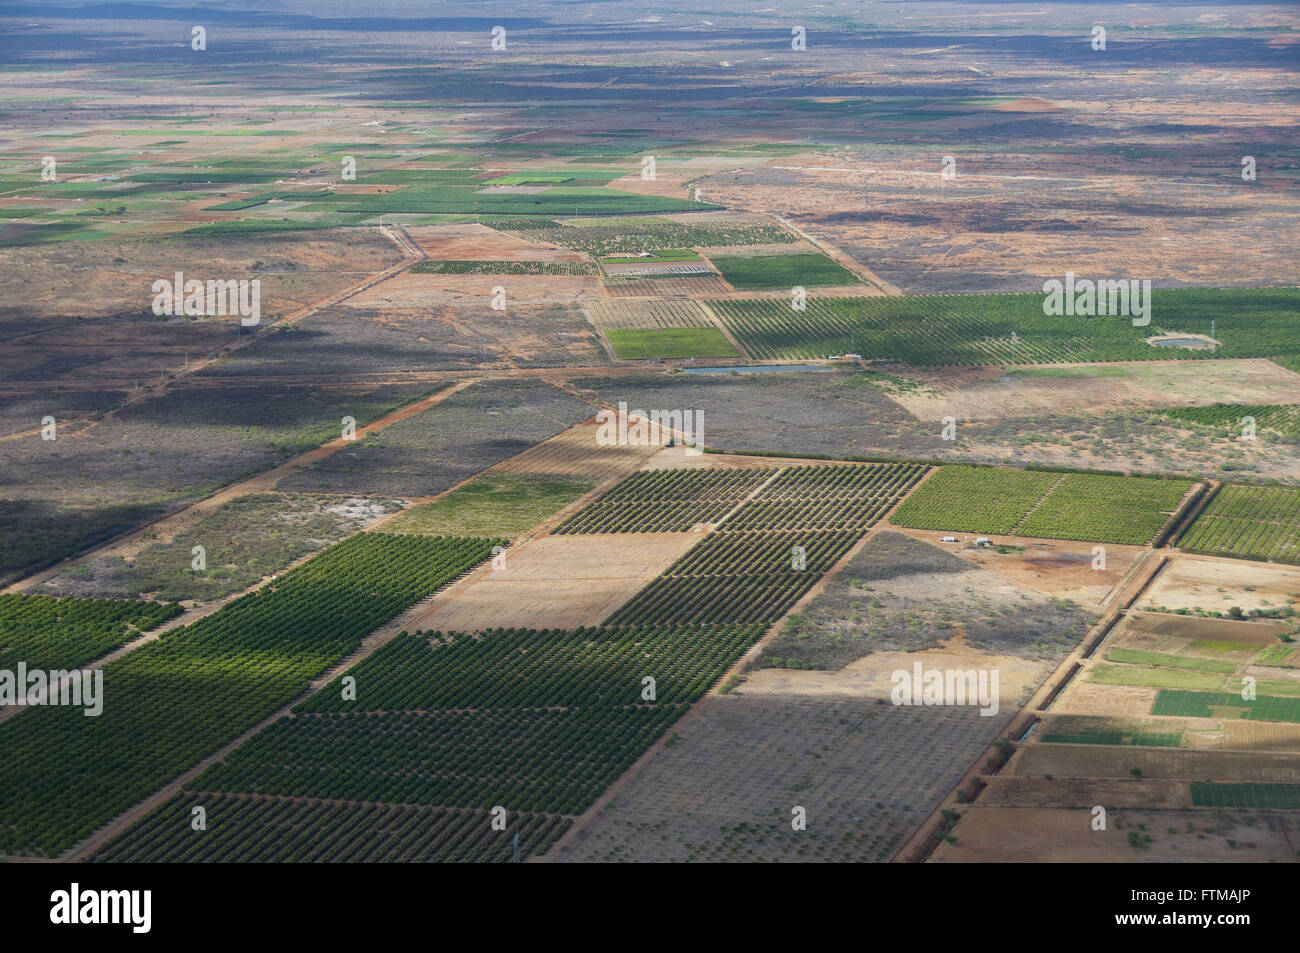 Luftaufnahme des bewässerten Plantagen - Savanne-region Stockfoto